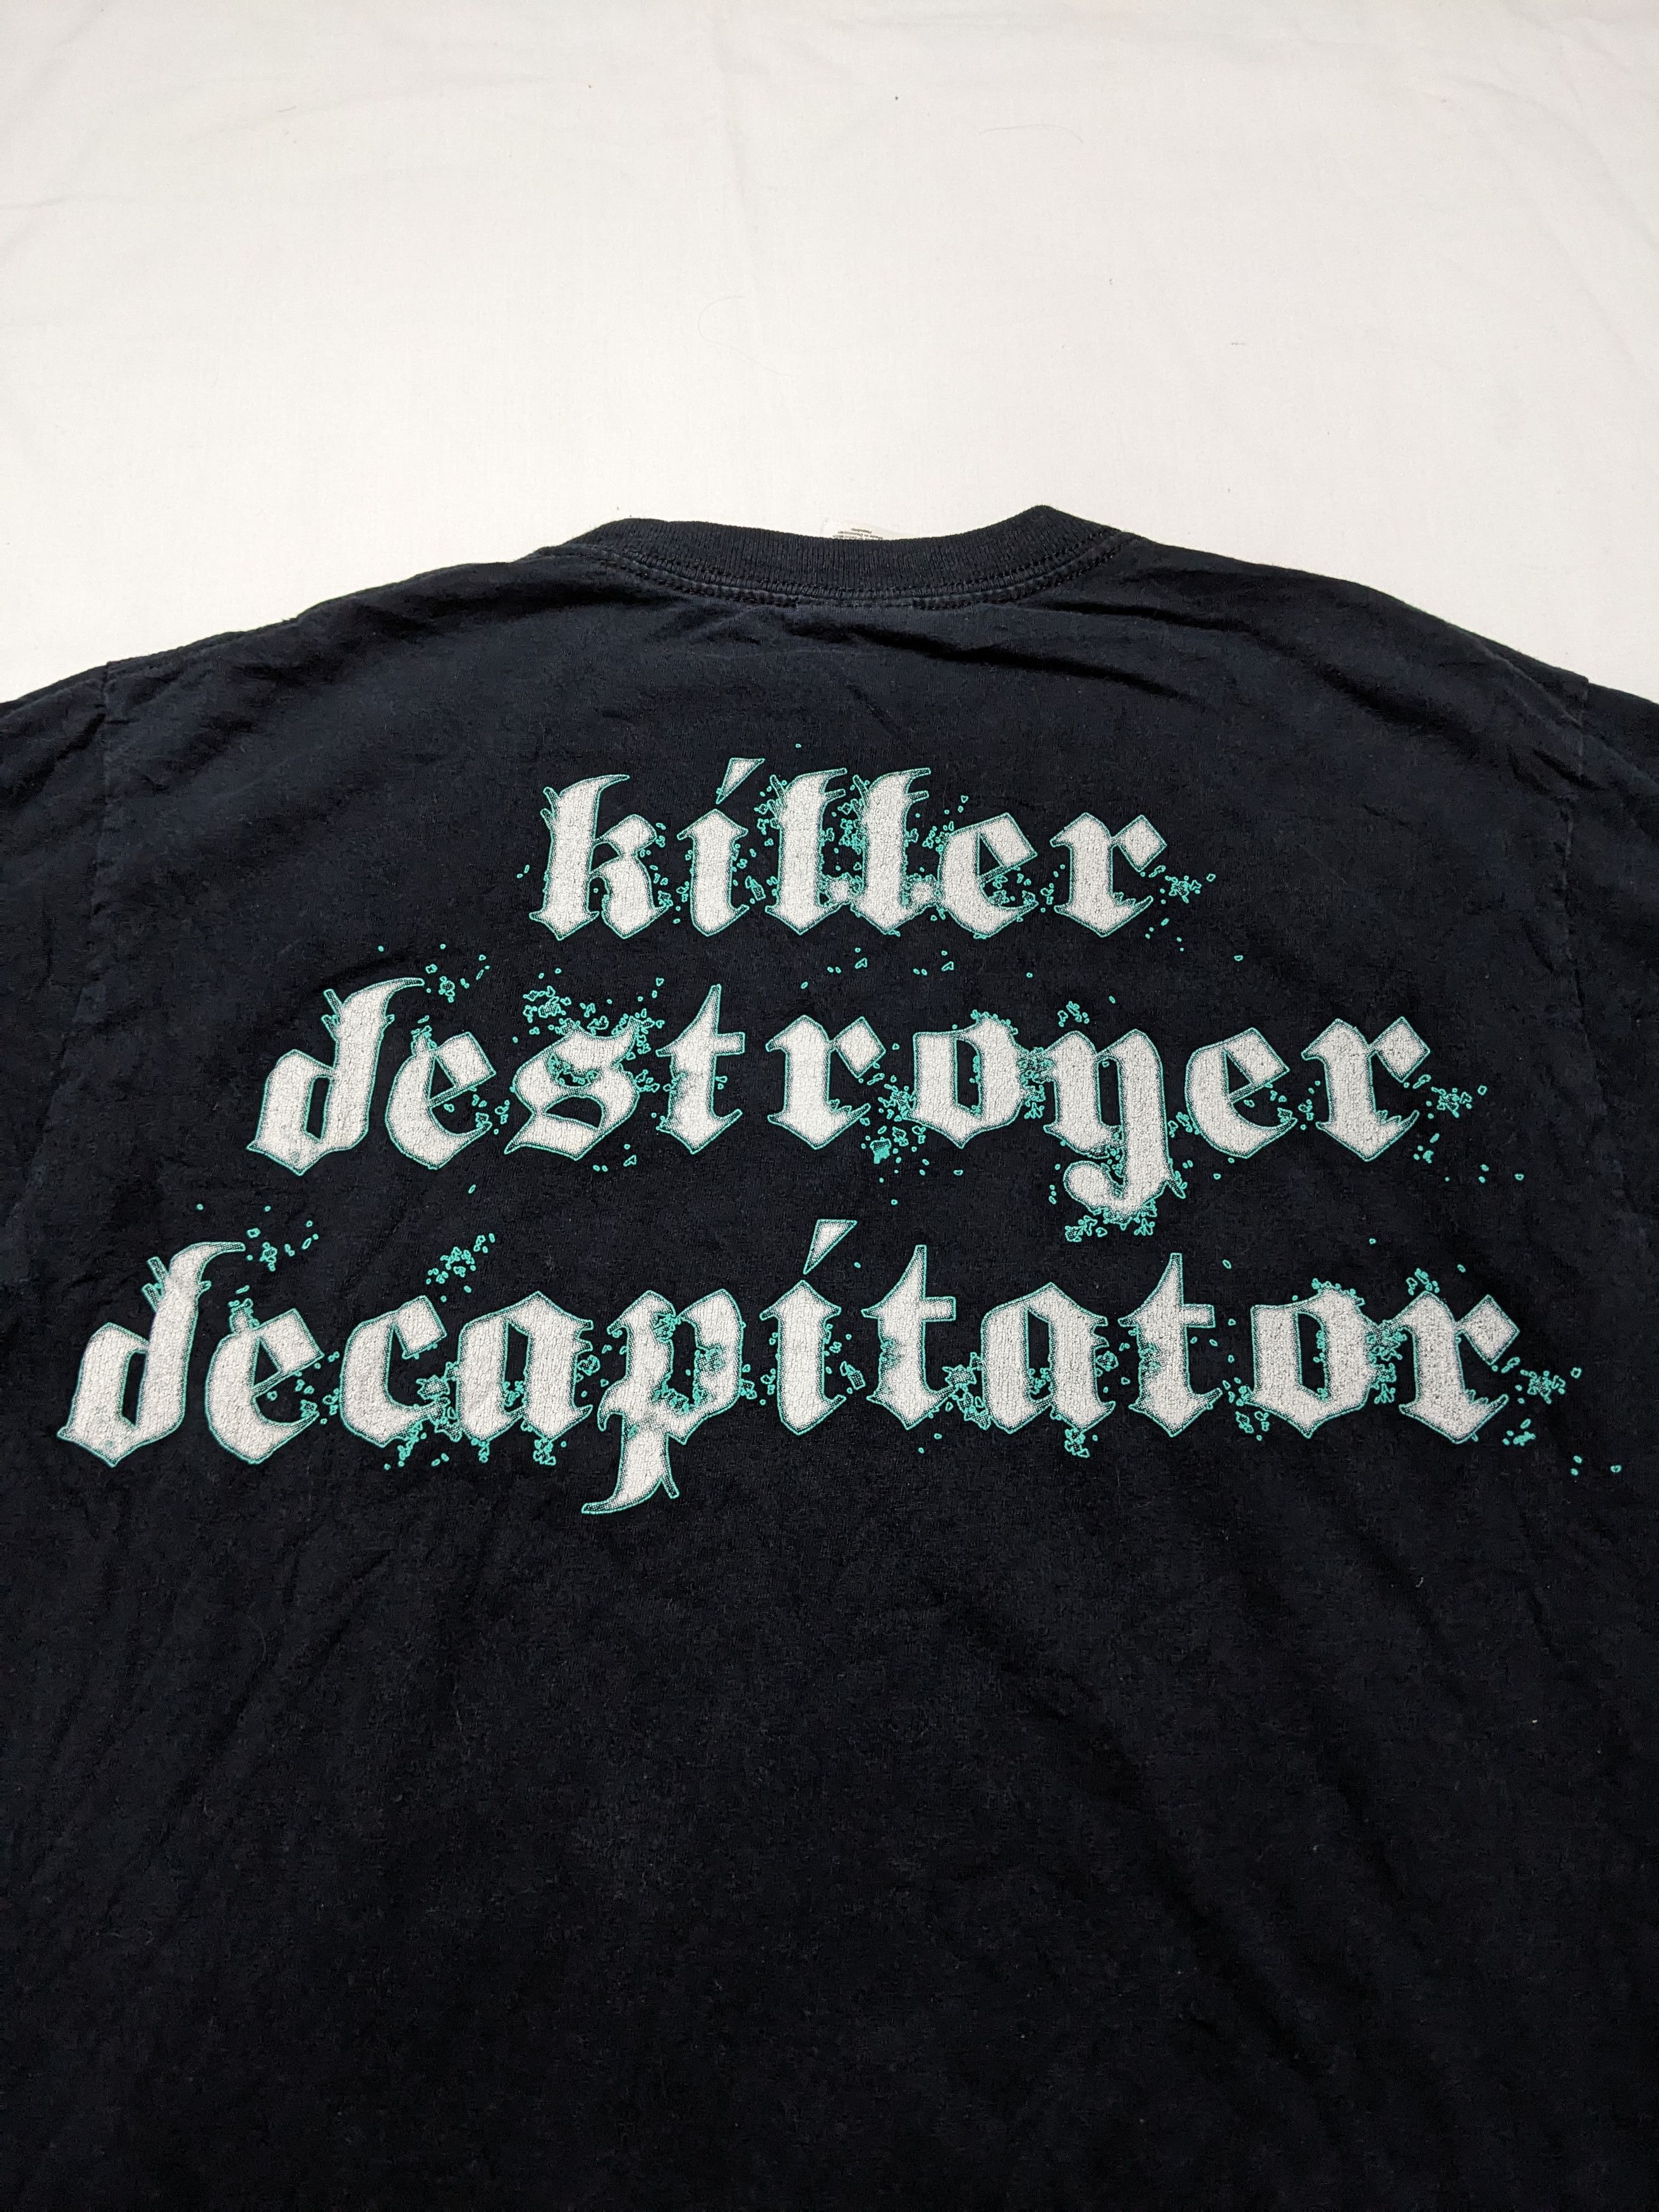 Skeletonwitch Killer Destroyer Decapitator Vintage Y2K Shirt - 4